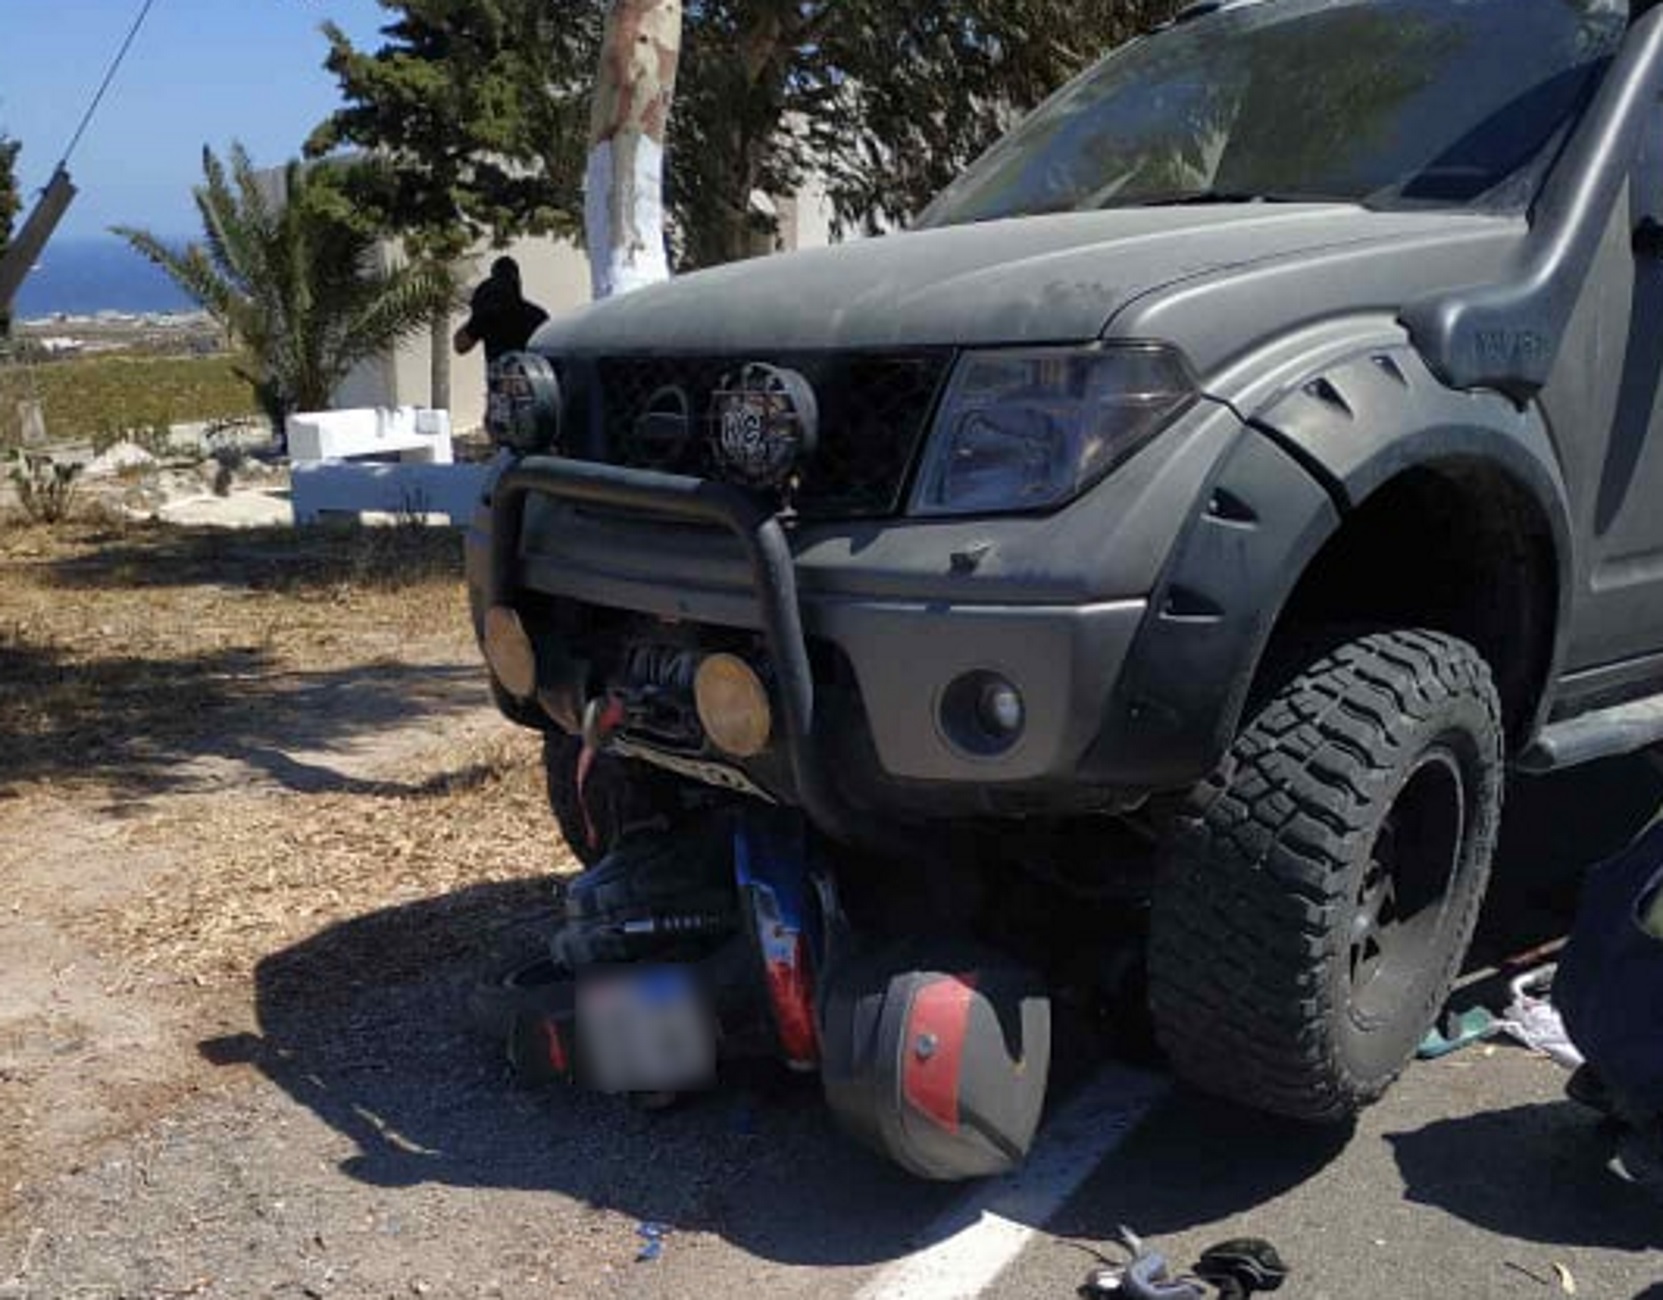 Σαντορίνη: Θηριώδες τζιπ «θέρισε» οδηγό μηχανής μπροστά στη γυναίκα του – Σκηνές που σοκάρουν